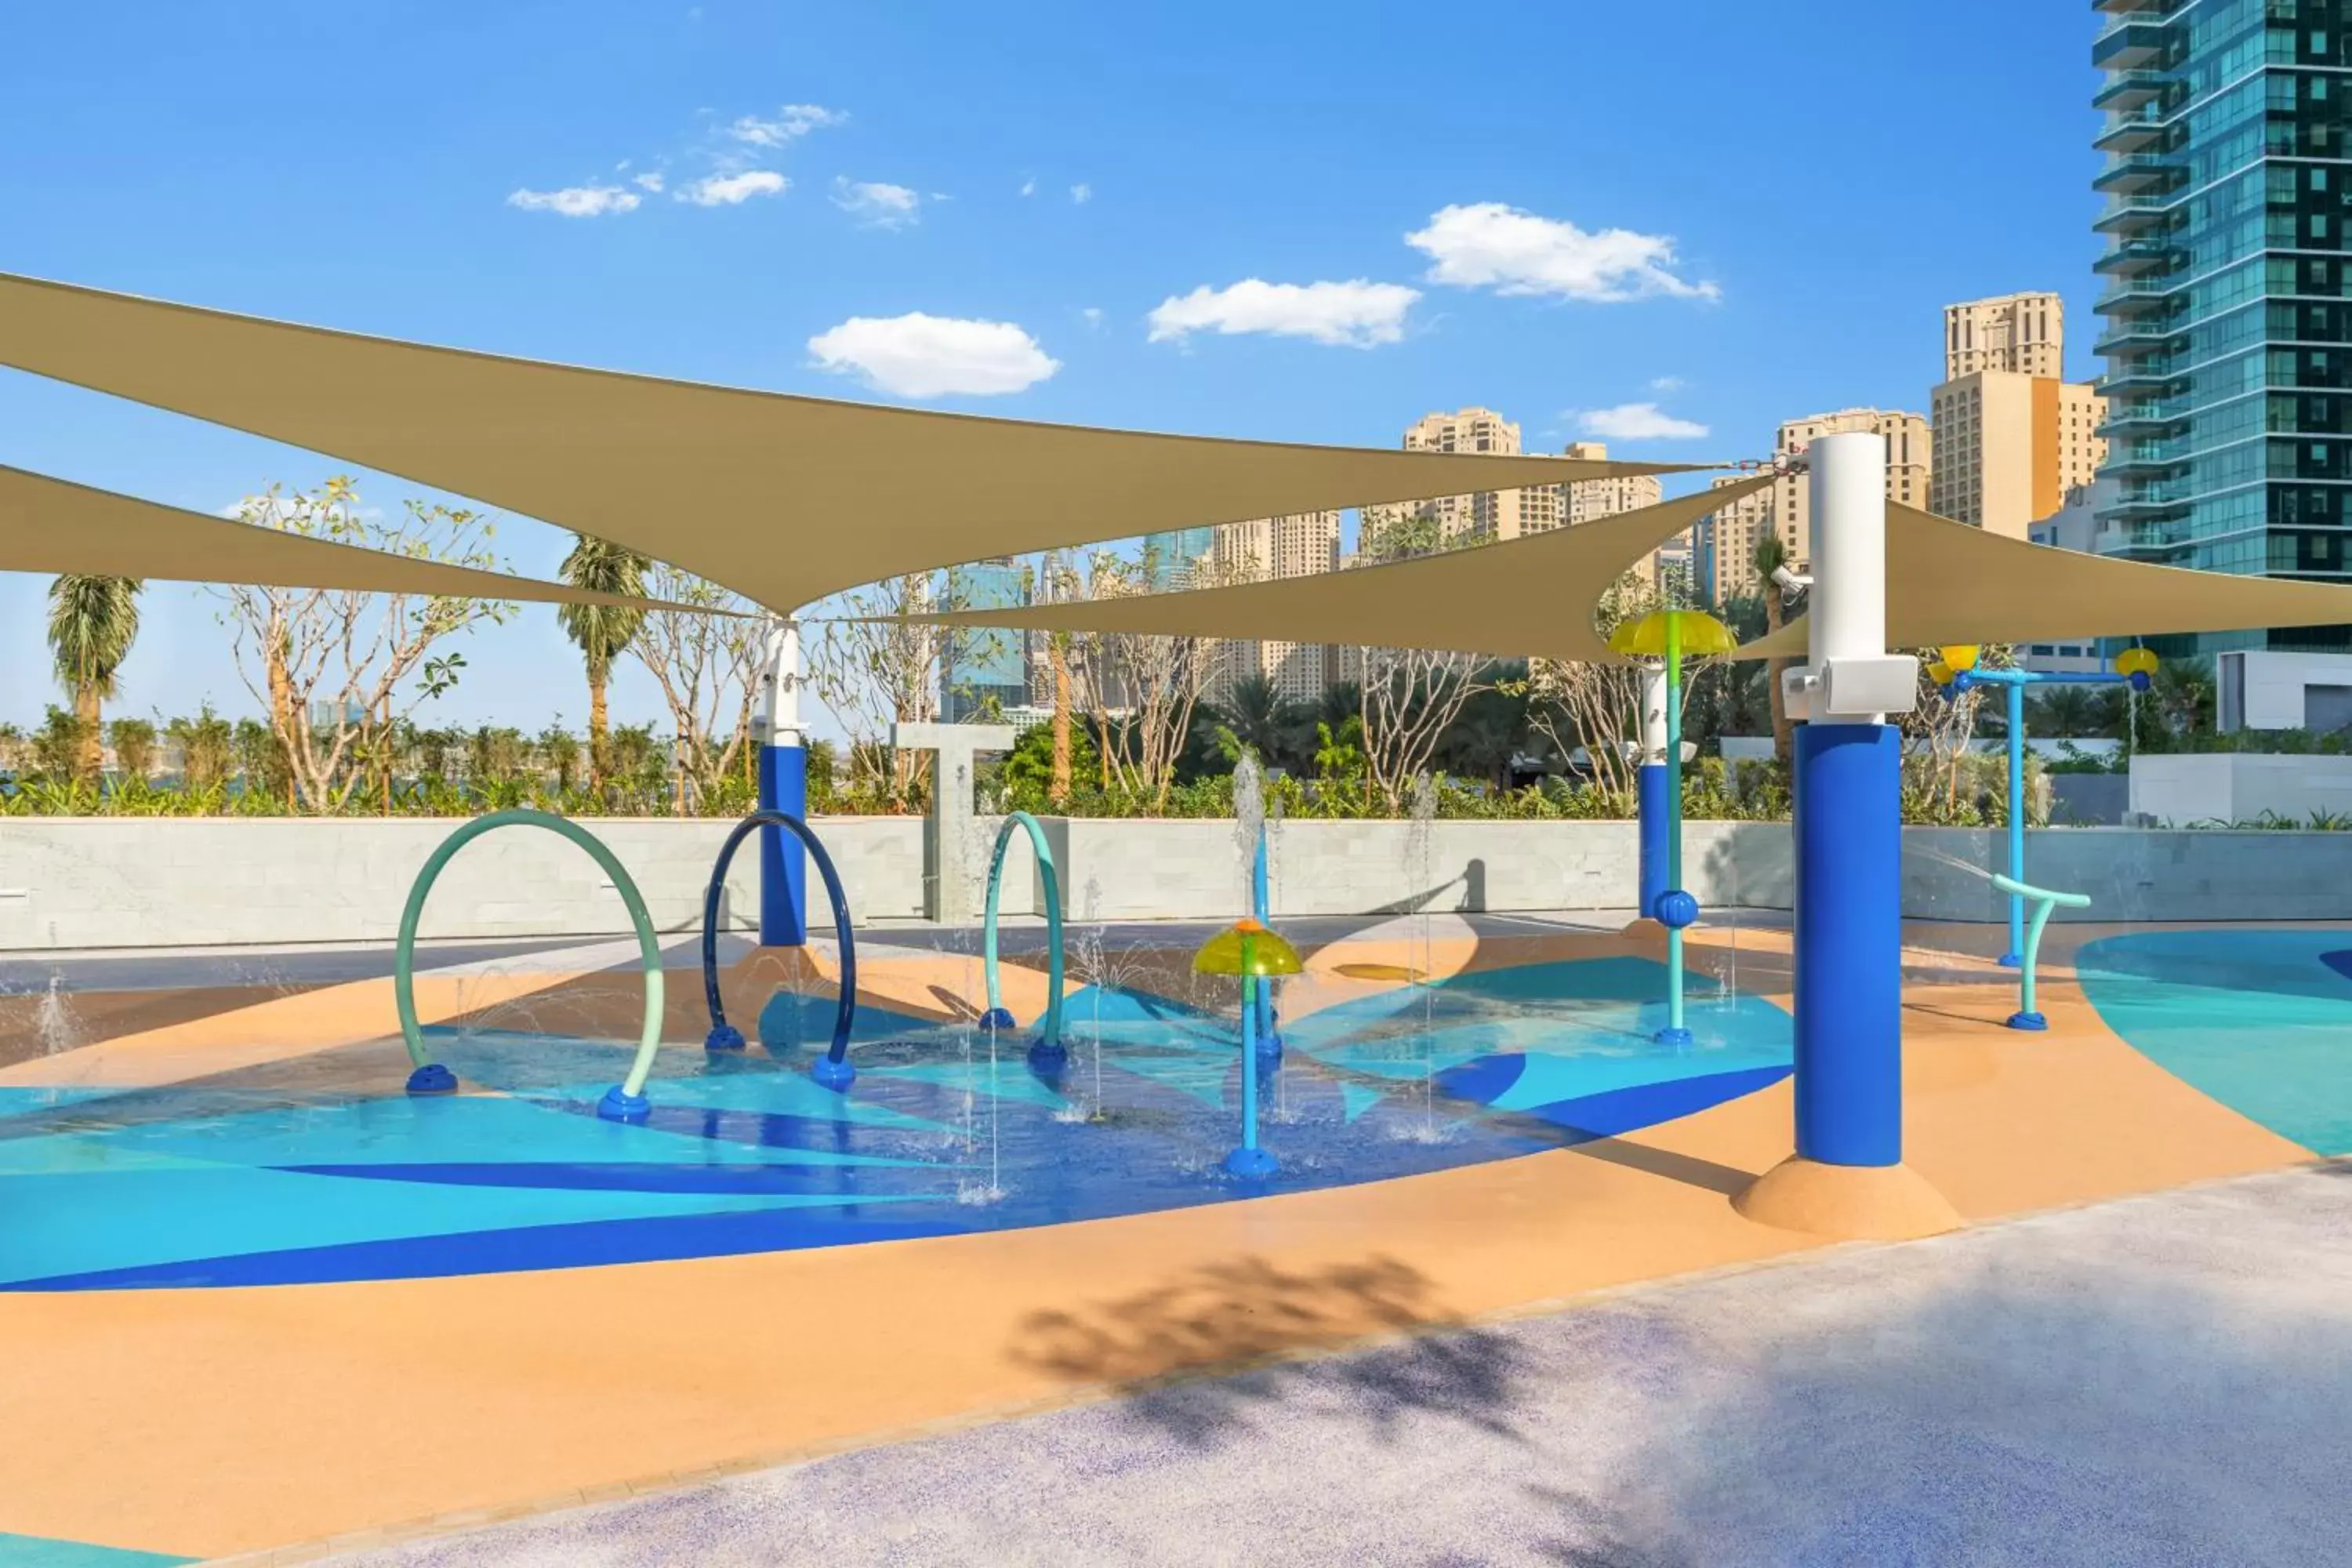 Children play ground, Swimming Pool in Address Beach Resort